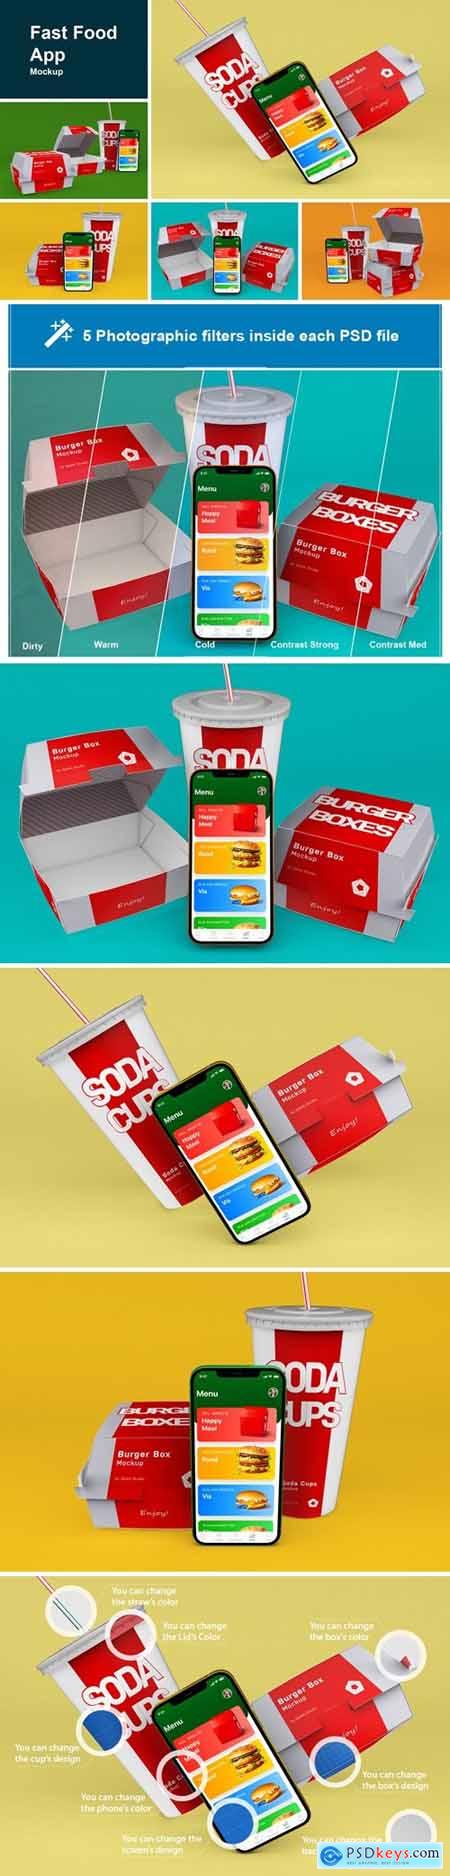 Fast Food App Mockup